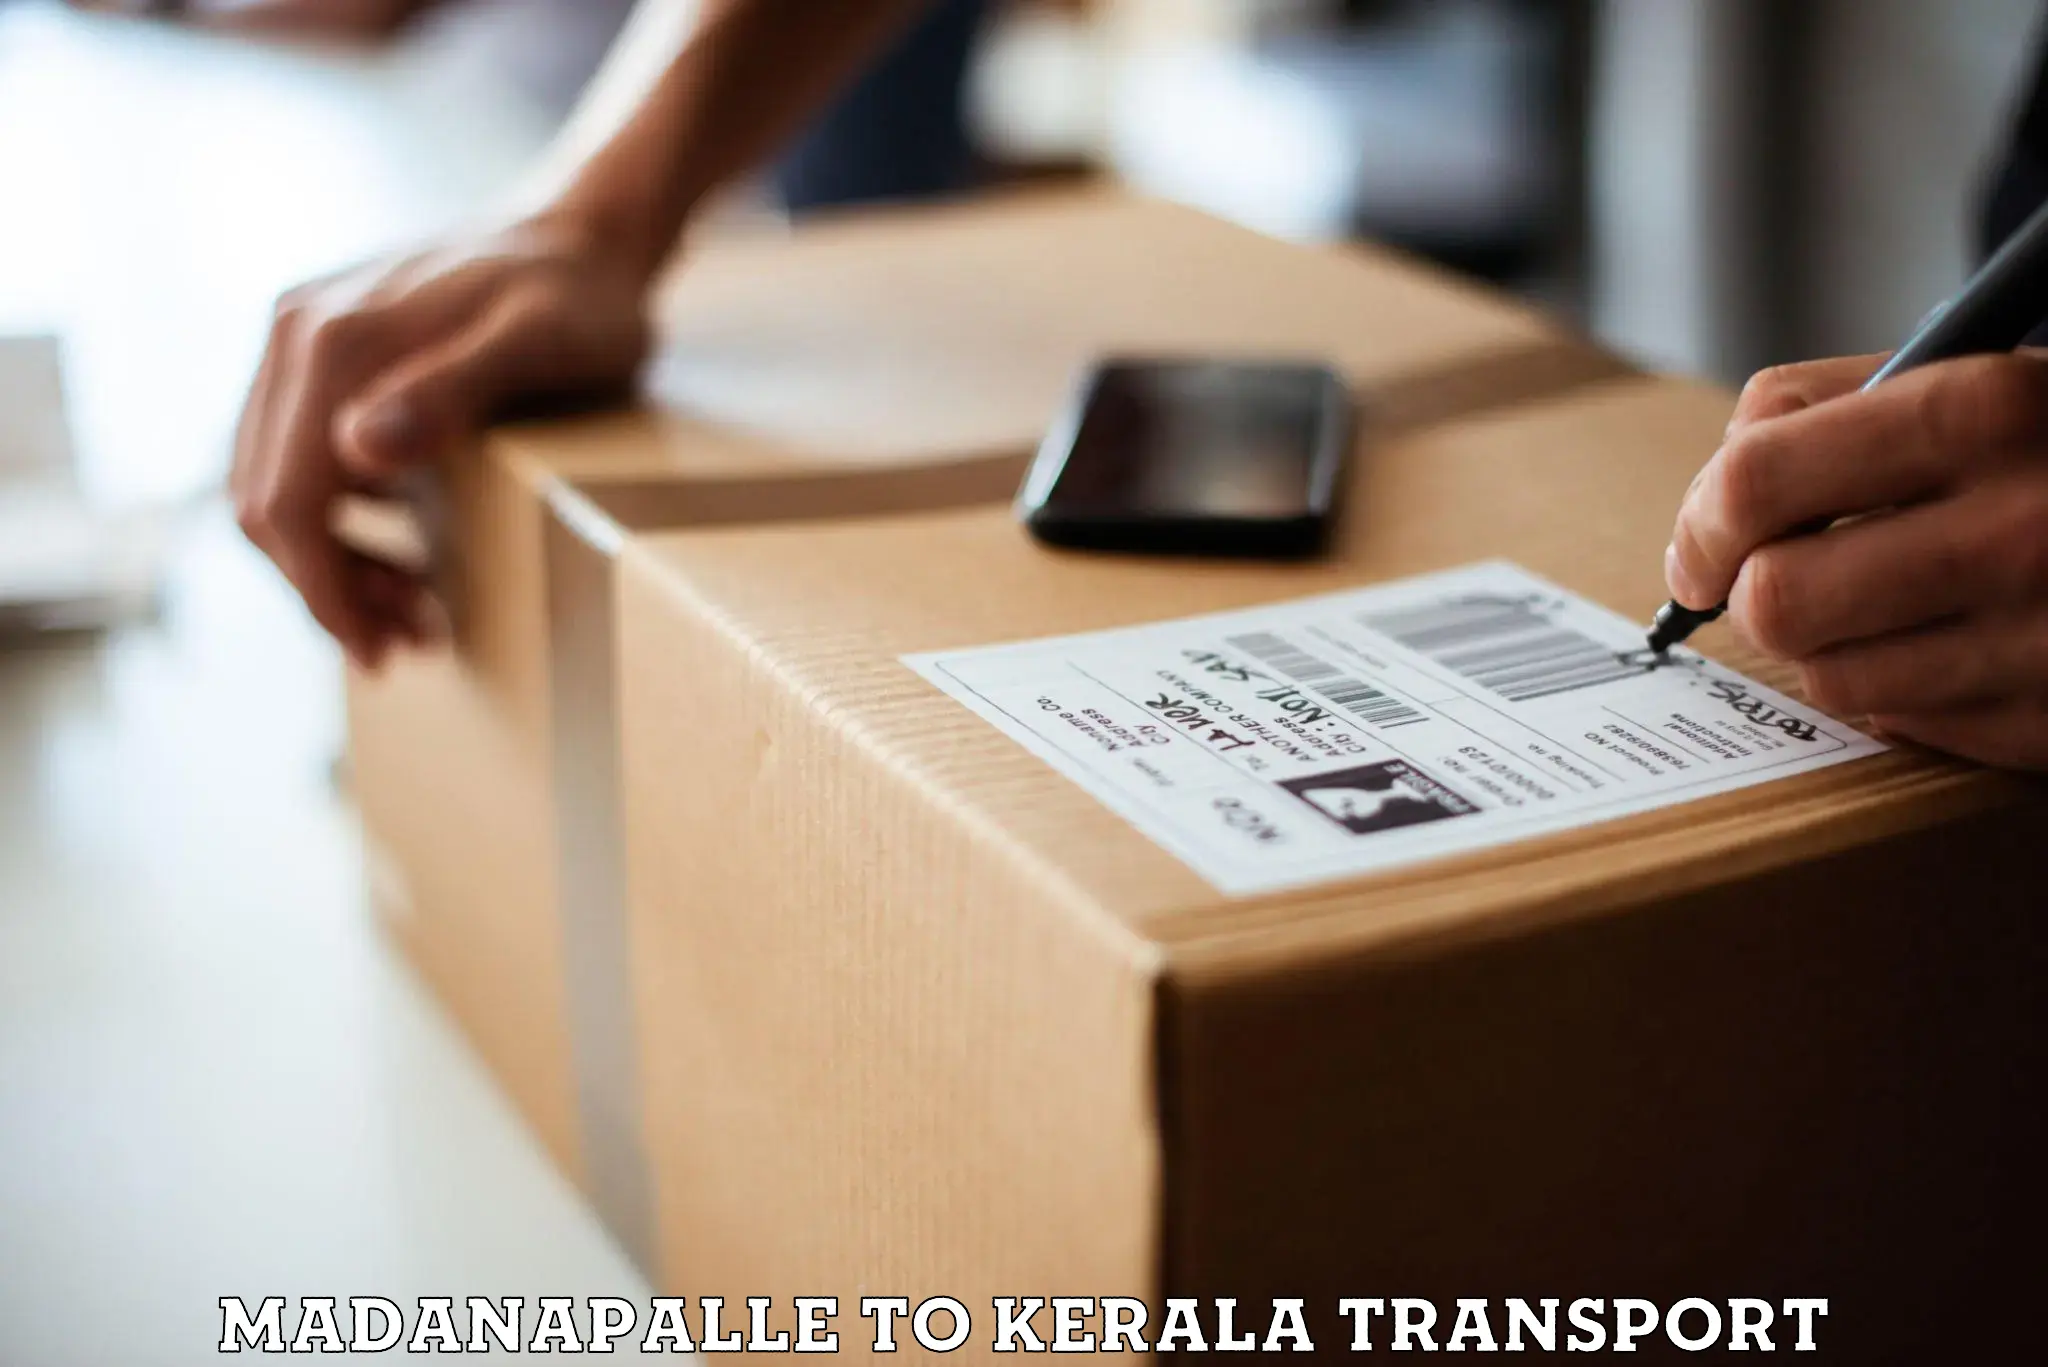 Online transport service Madanapalle to Thiruvananthapuram